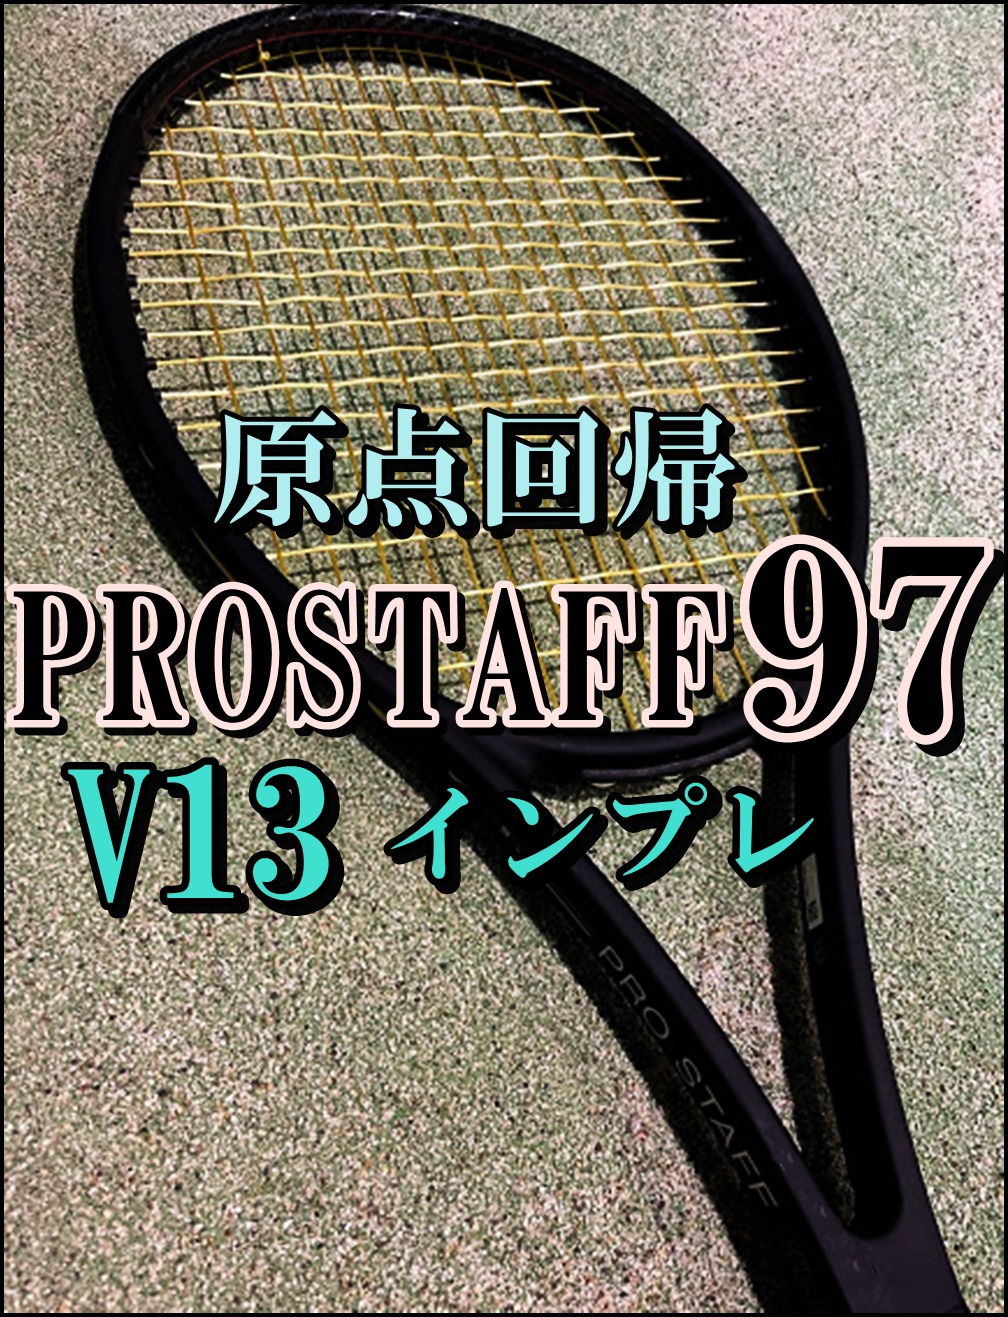 テニスラケット ウィルソン プロ スタッフ 97 バージョン13.0 2020年モデル (G2)WILSON PRO STAFF 97 V13.0 2020